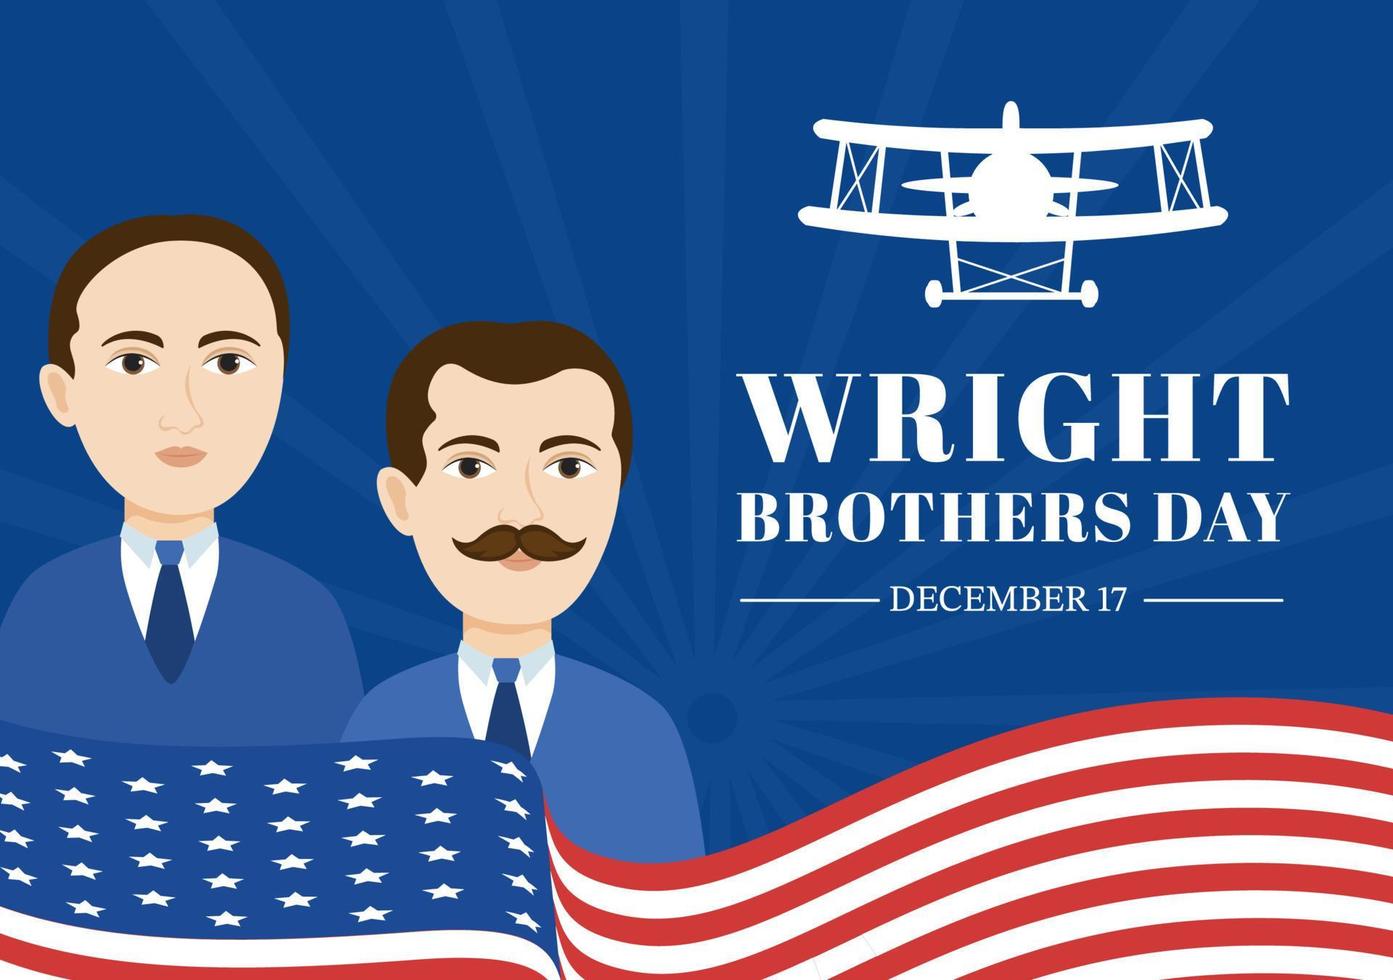 día de los hermanos wright el 17 de diciembre plantilla dibujada a mano  ilustración de dibujos animados del primer vuelo exitoso en un avión  propulsado mecánicamente 11200957 Vector en Vecteezy